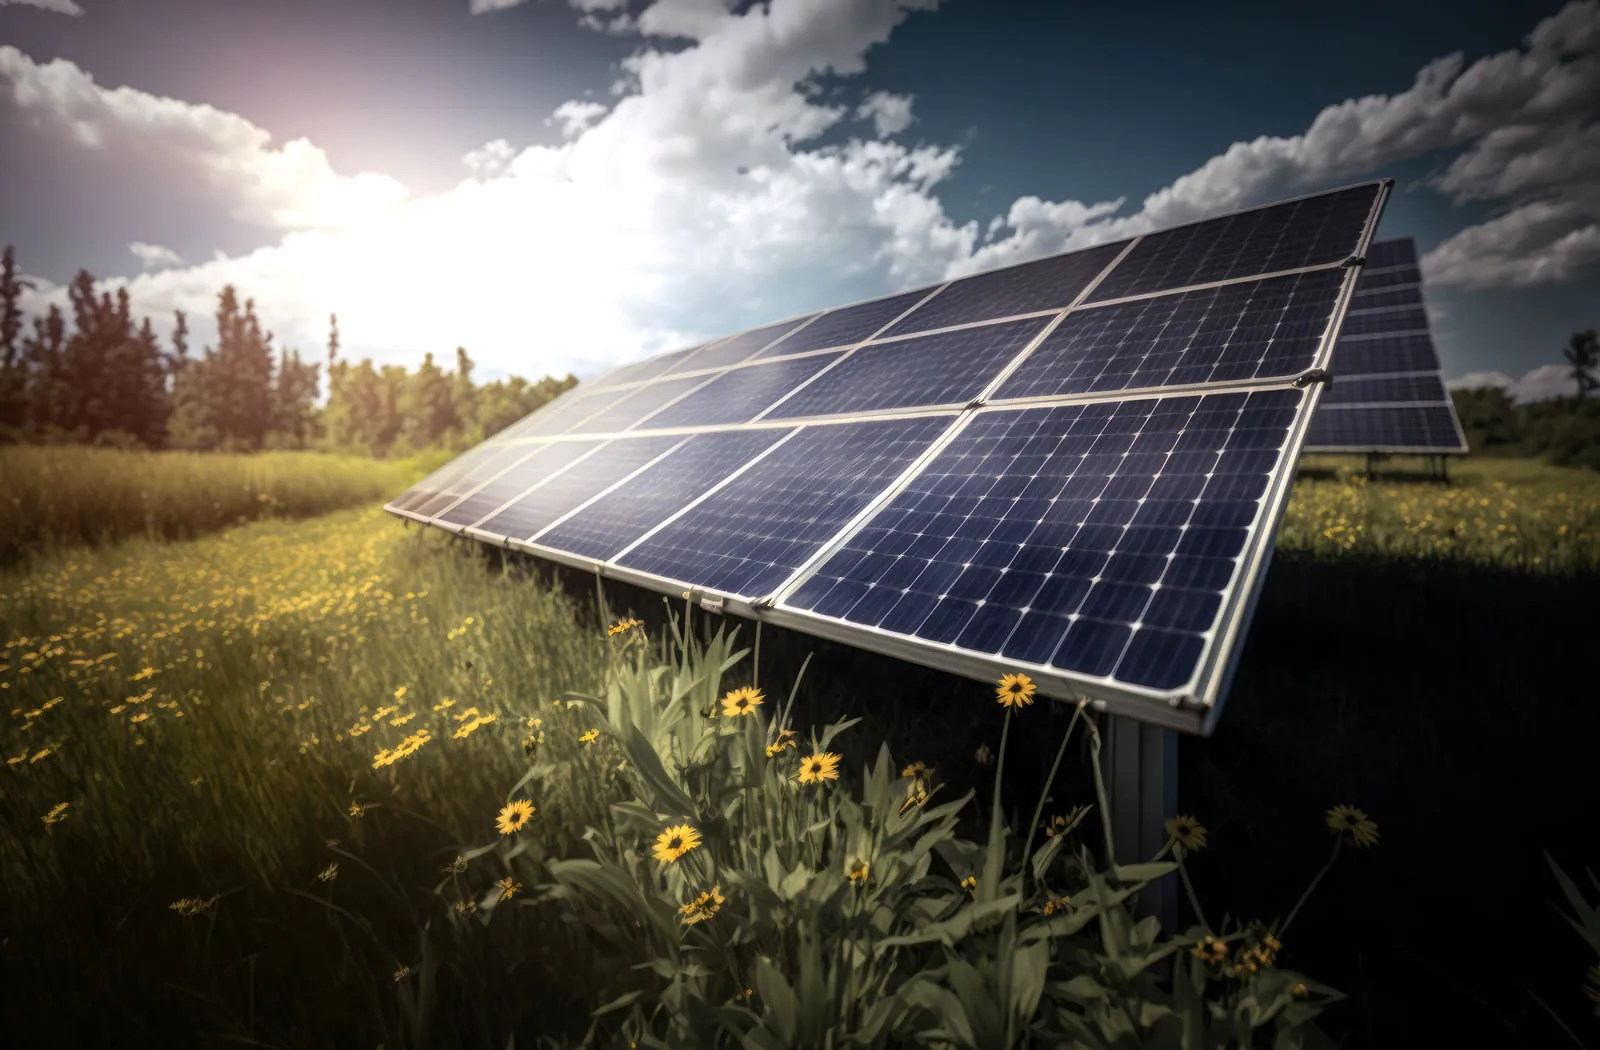 Off-grid solar energy